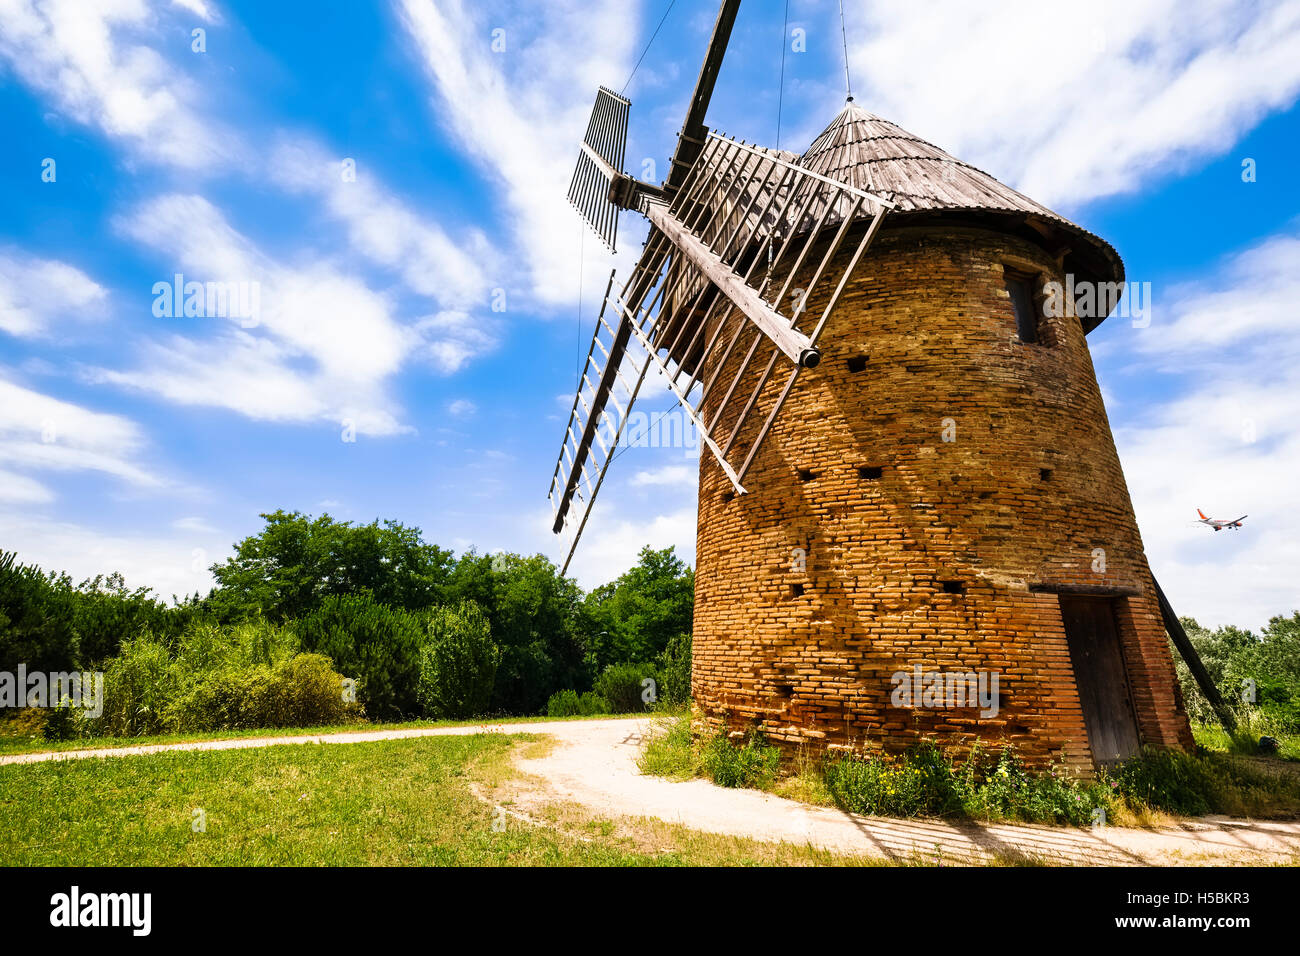 Historische Windmühle in der Nähe von Flughafen, Toulouse, Frankreich Stockfoto